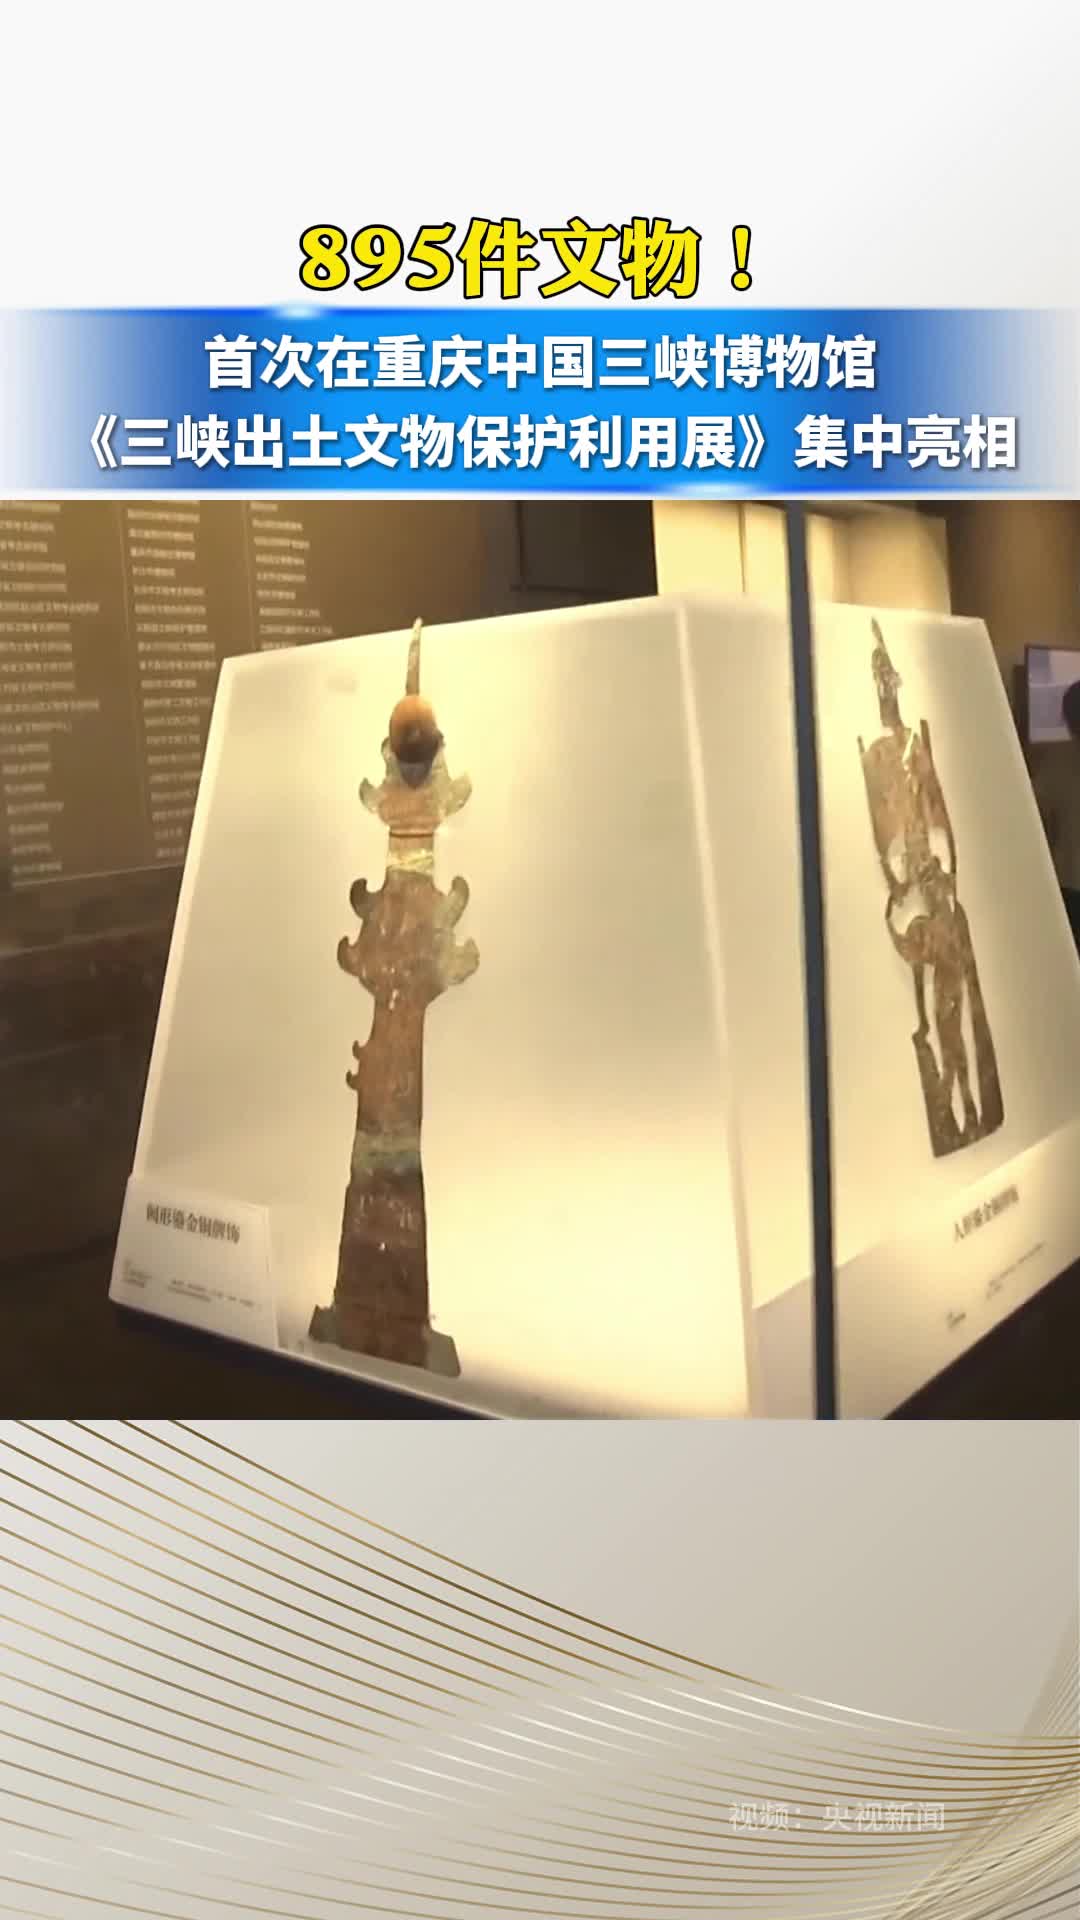 895件文物！首次在重庆中国三峡博物馆《三峡出土文物保护利用展》集中亮相